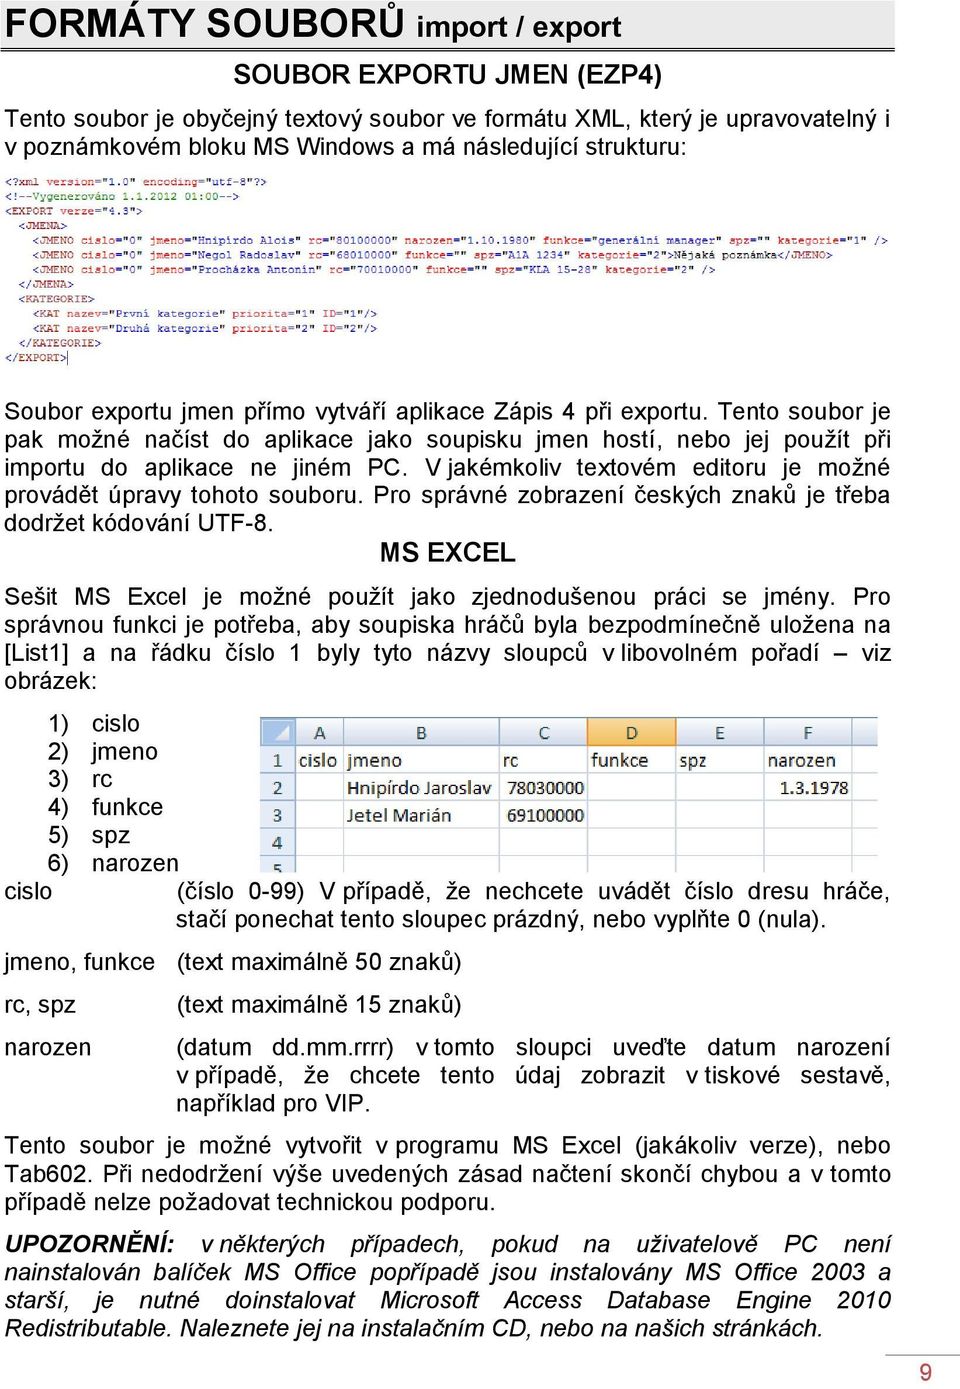 V jakémkoliv textovém editoru je možné provádět úpravy tohoto souboru. Pro správné zobrazení českých znaků je třeba dodržet kódování UTF-8.